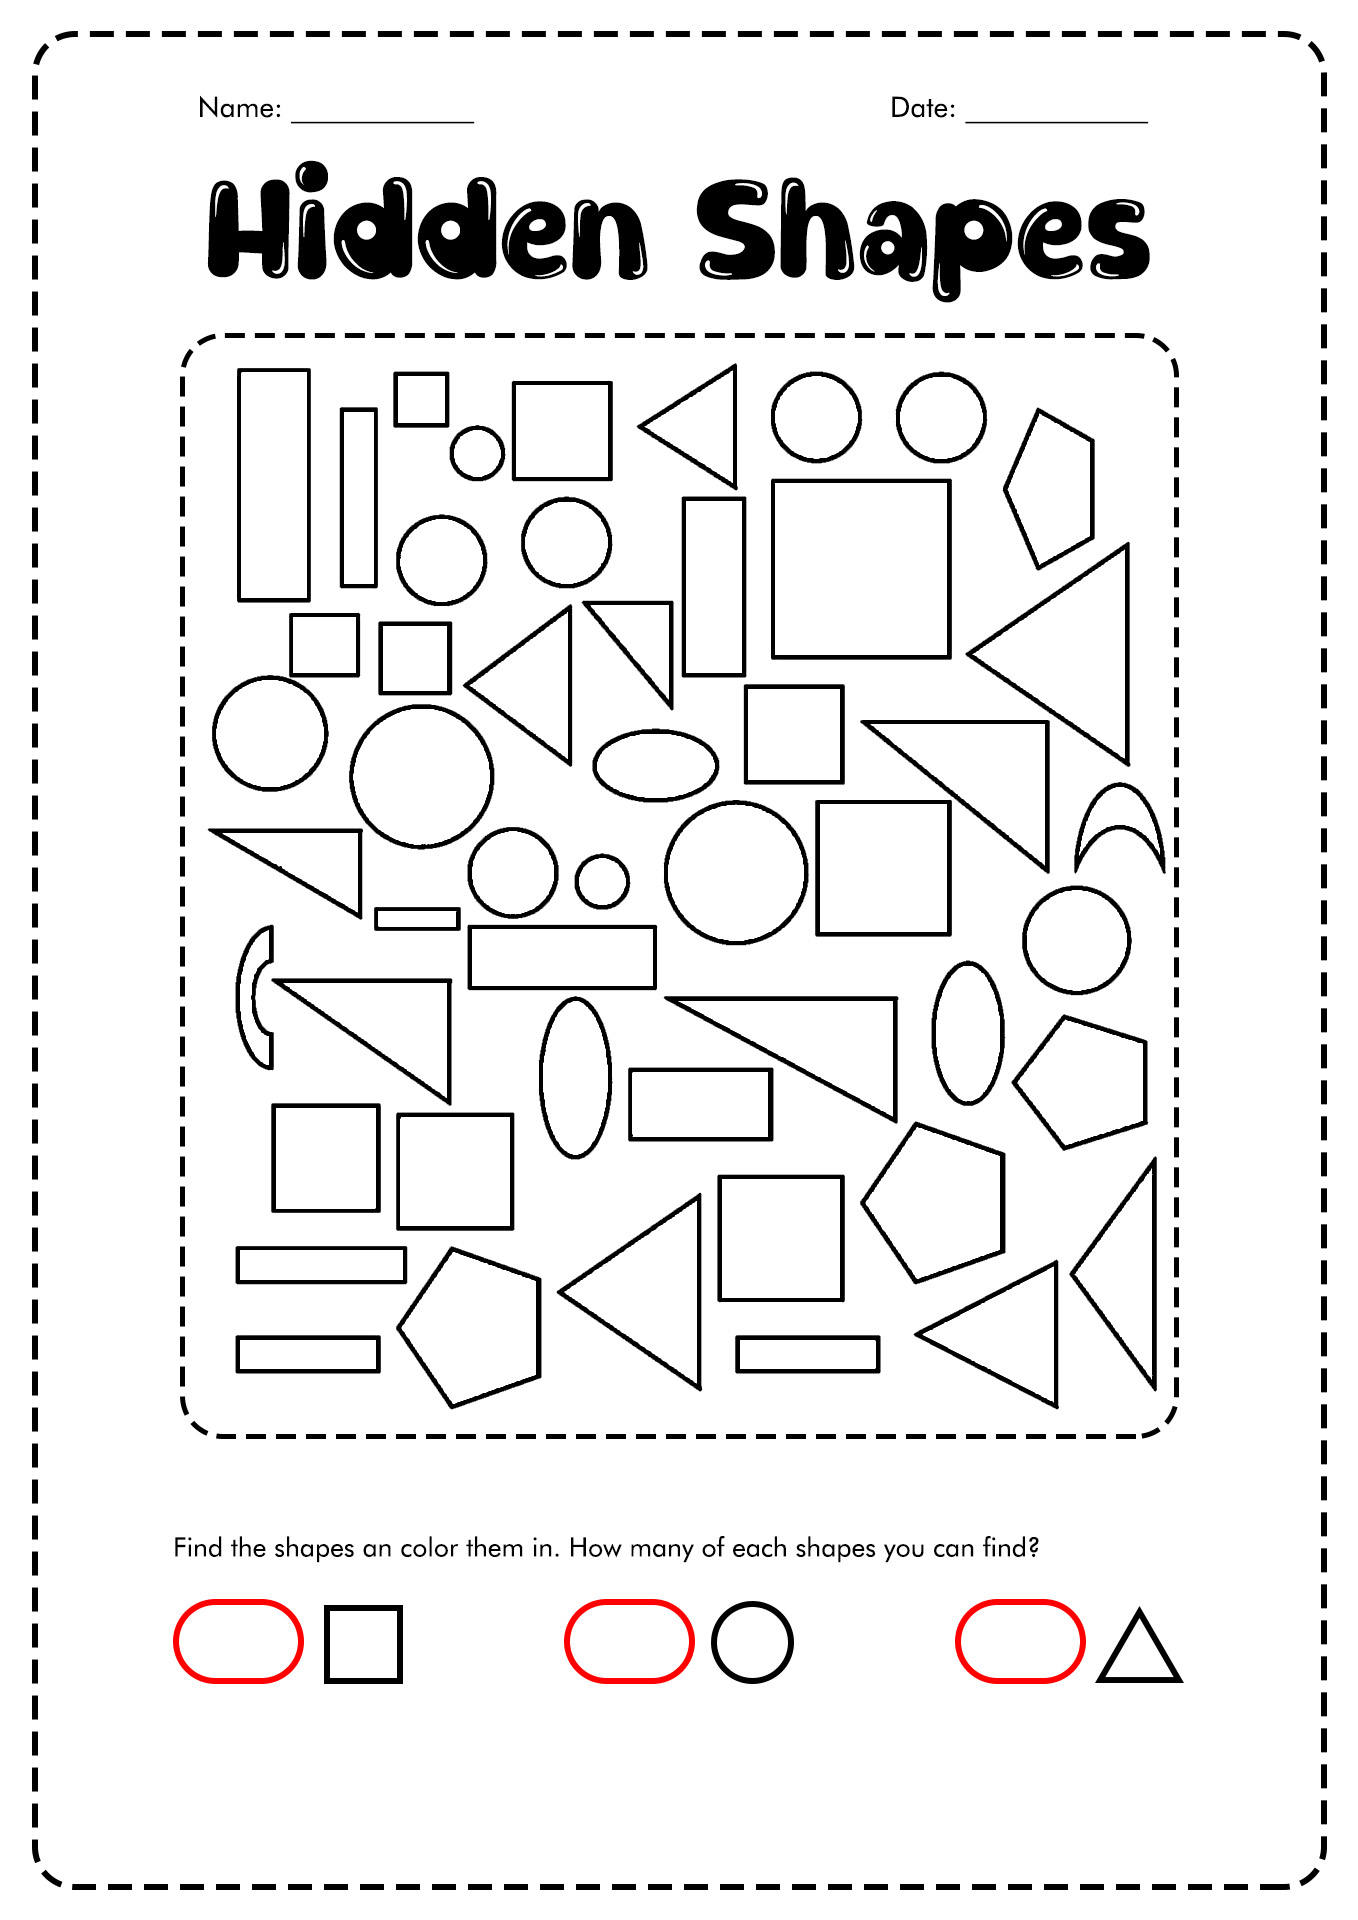 Hidden Shapes Worksheet for 1st Grade Image